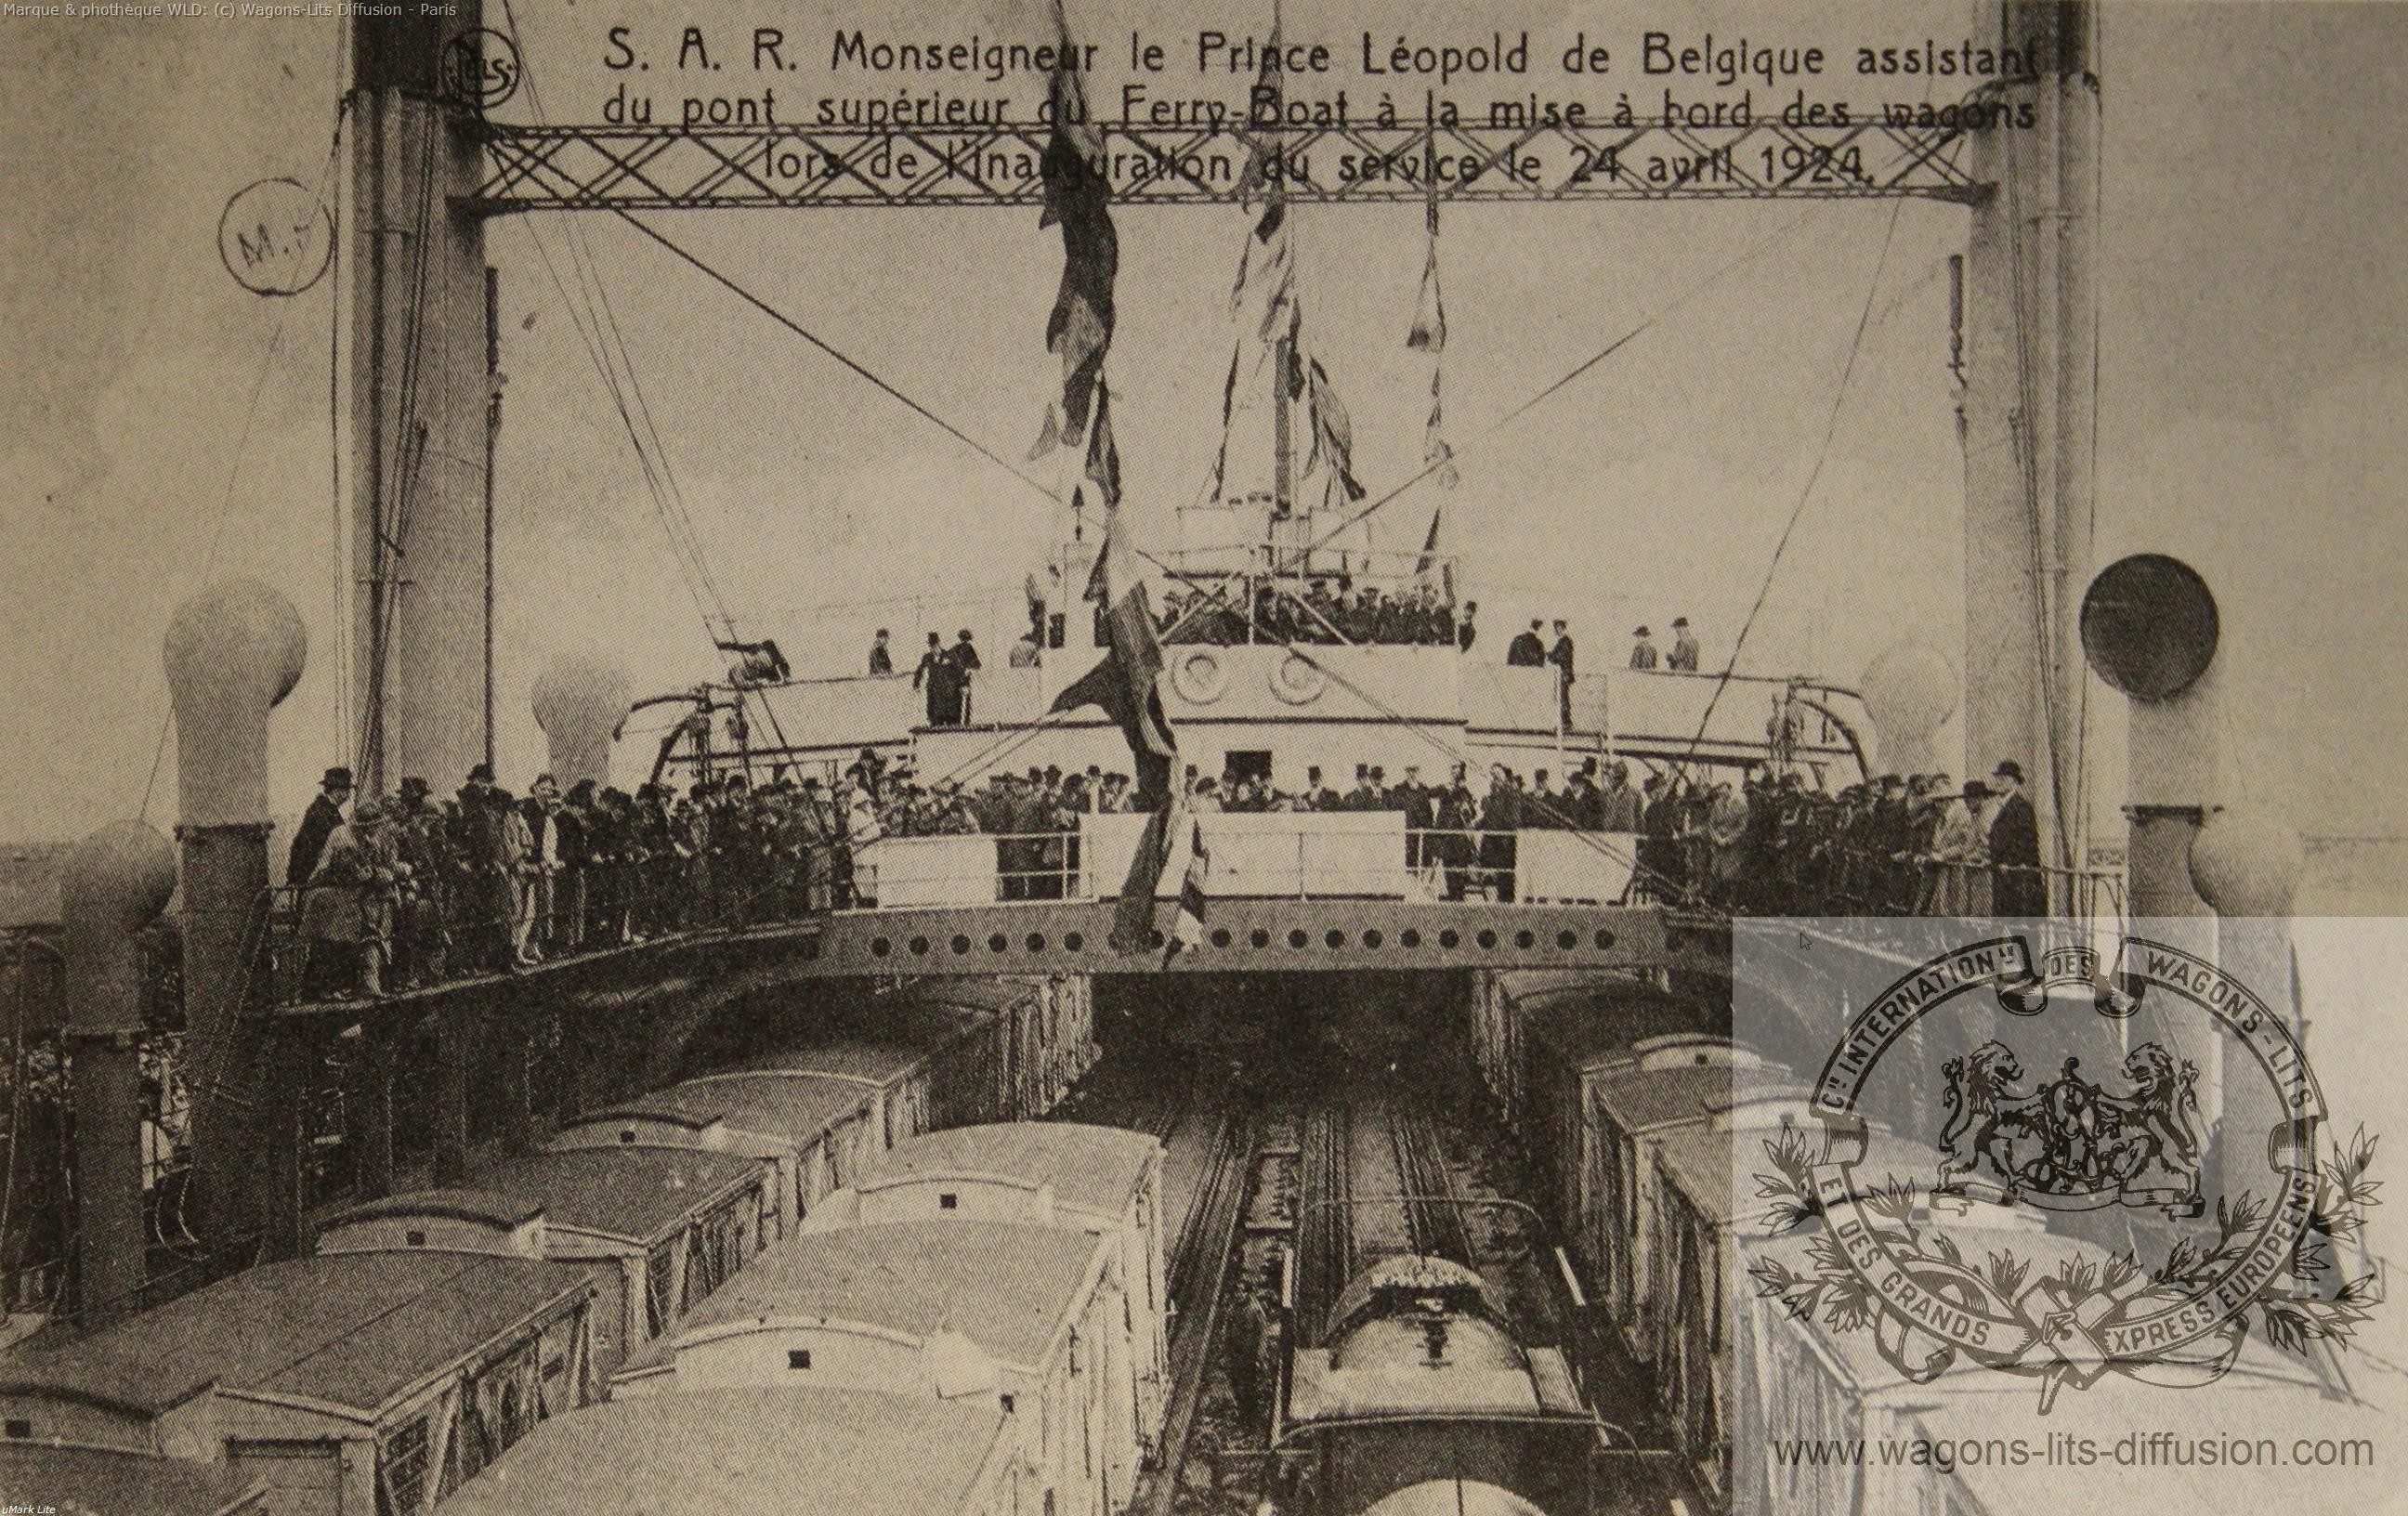 Wl leopold de belgique sur le ferry boat night ferry 1924